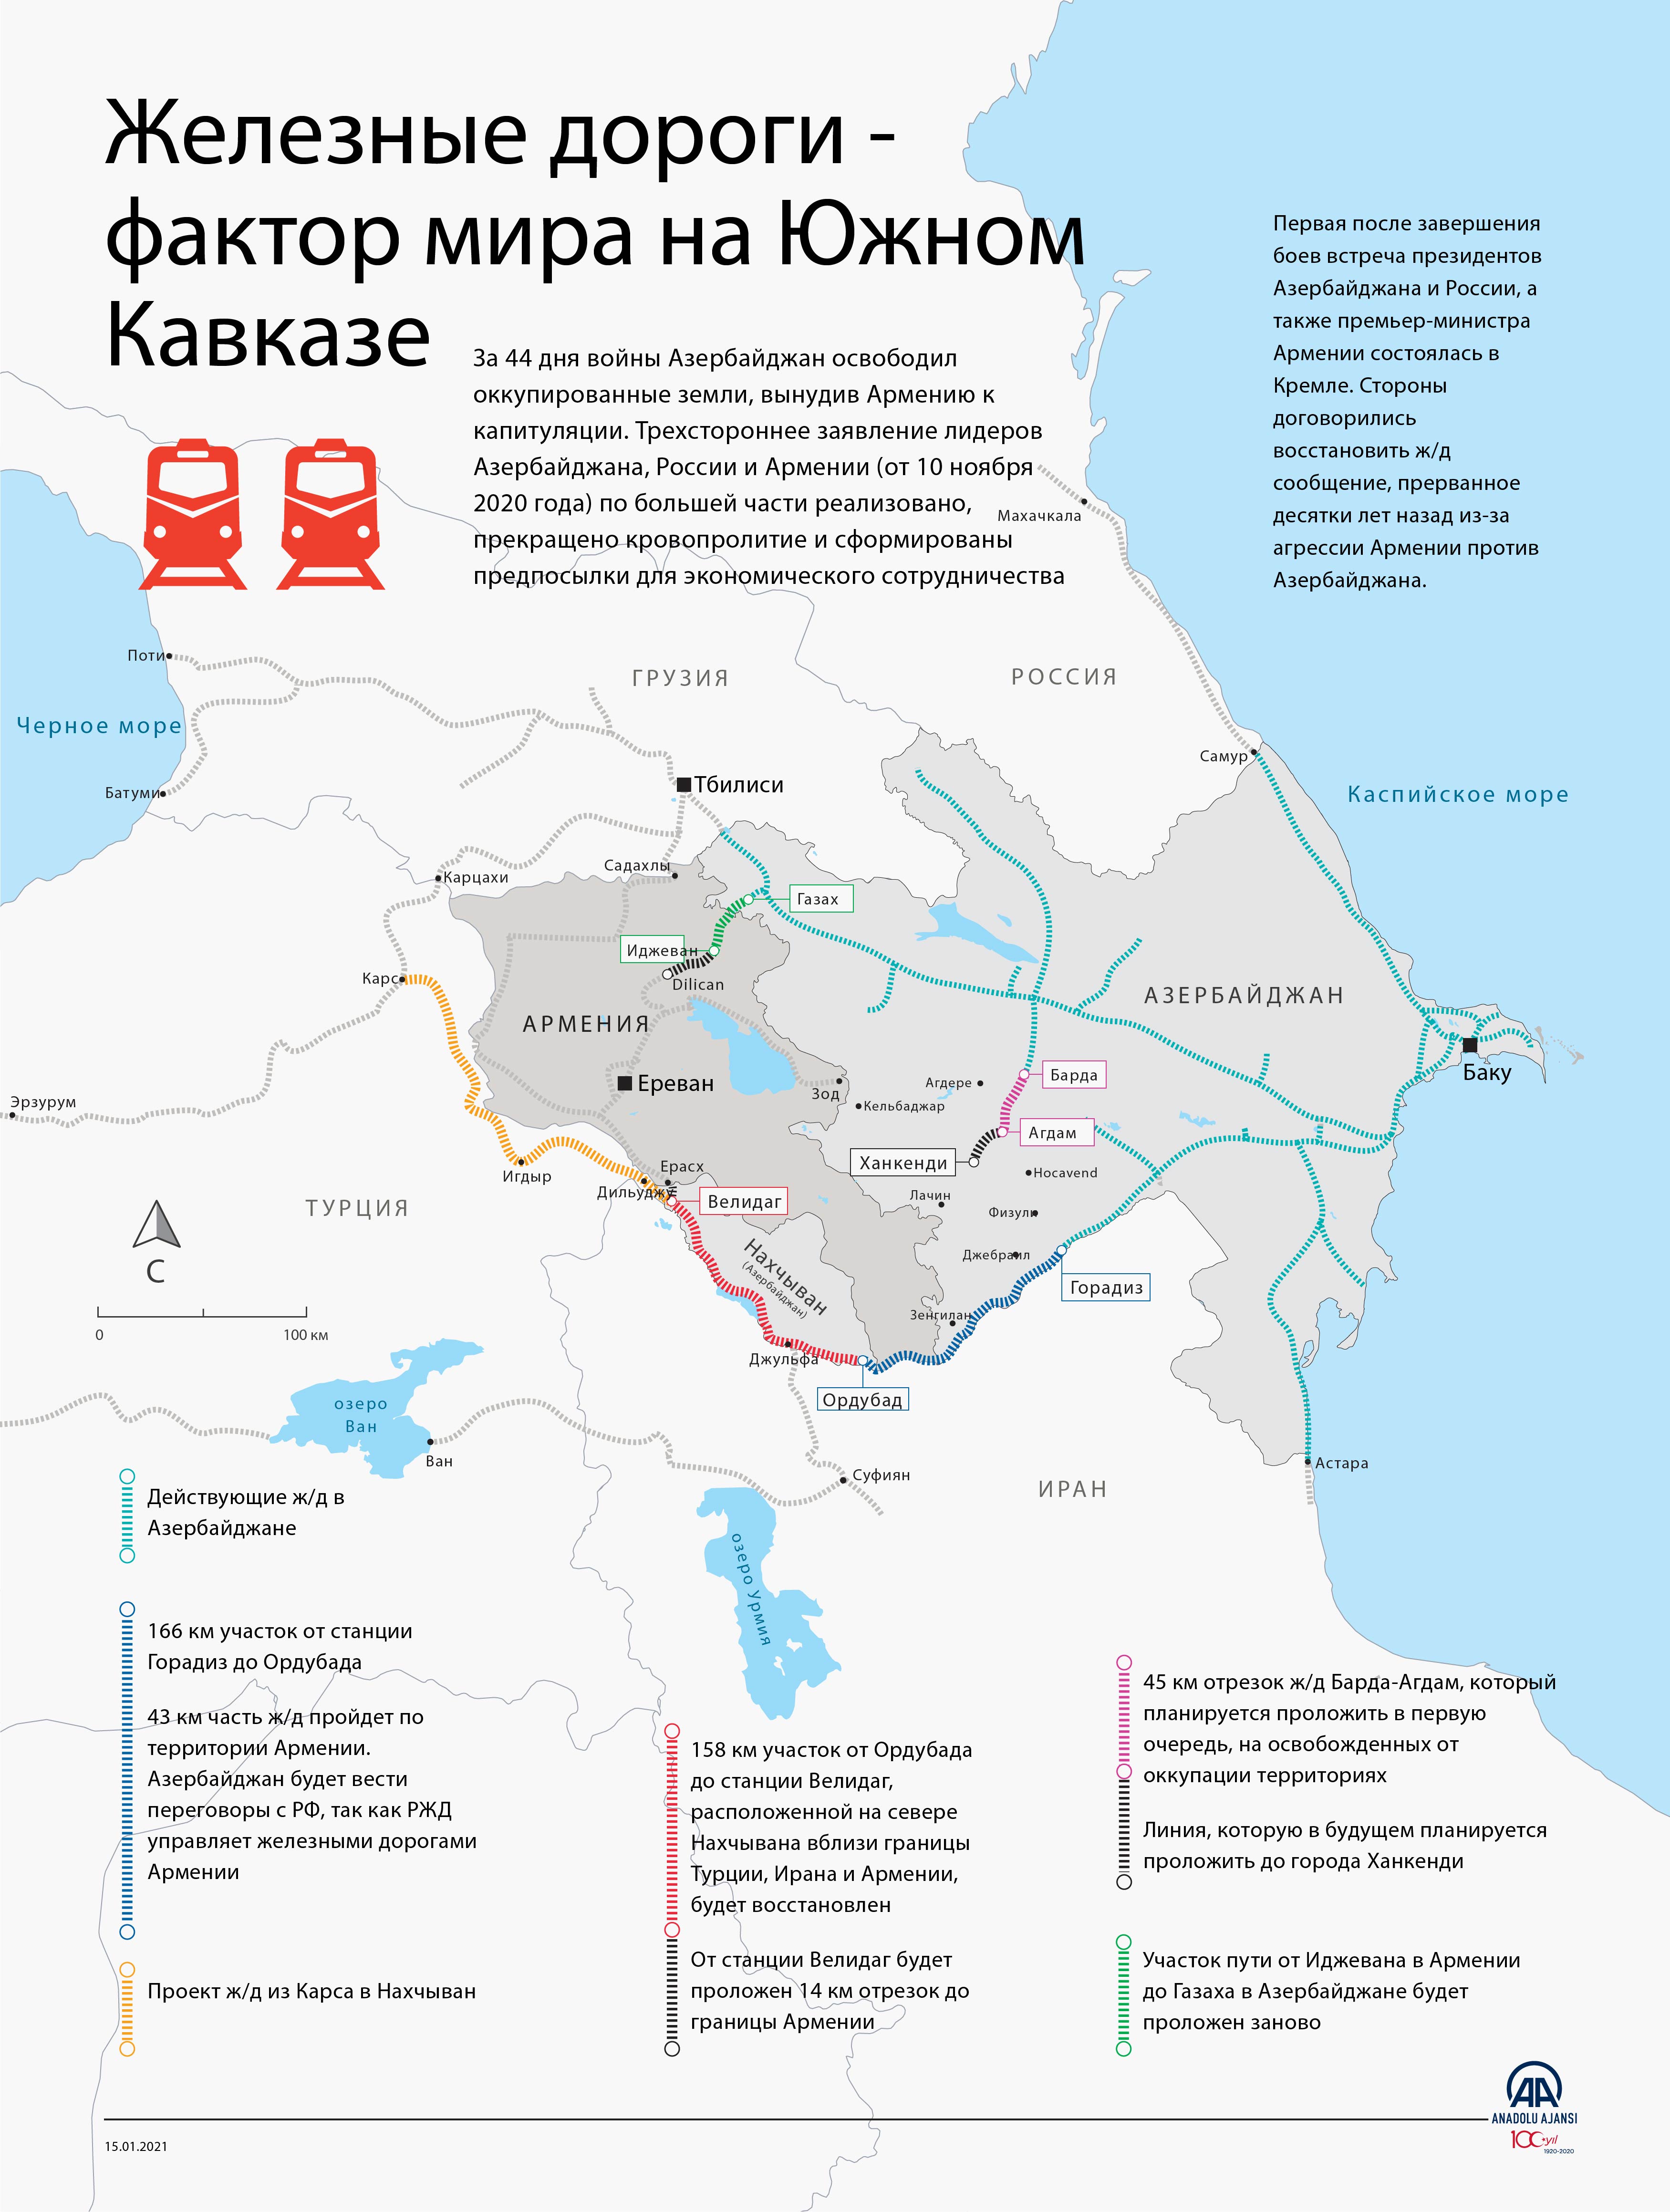 Железные дороги - важный фактор мира на Южном Кавказе